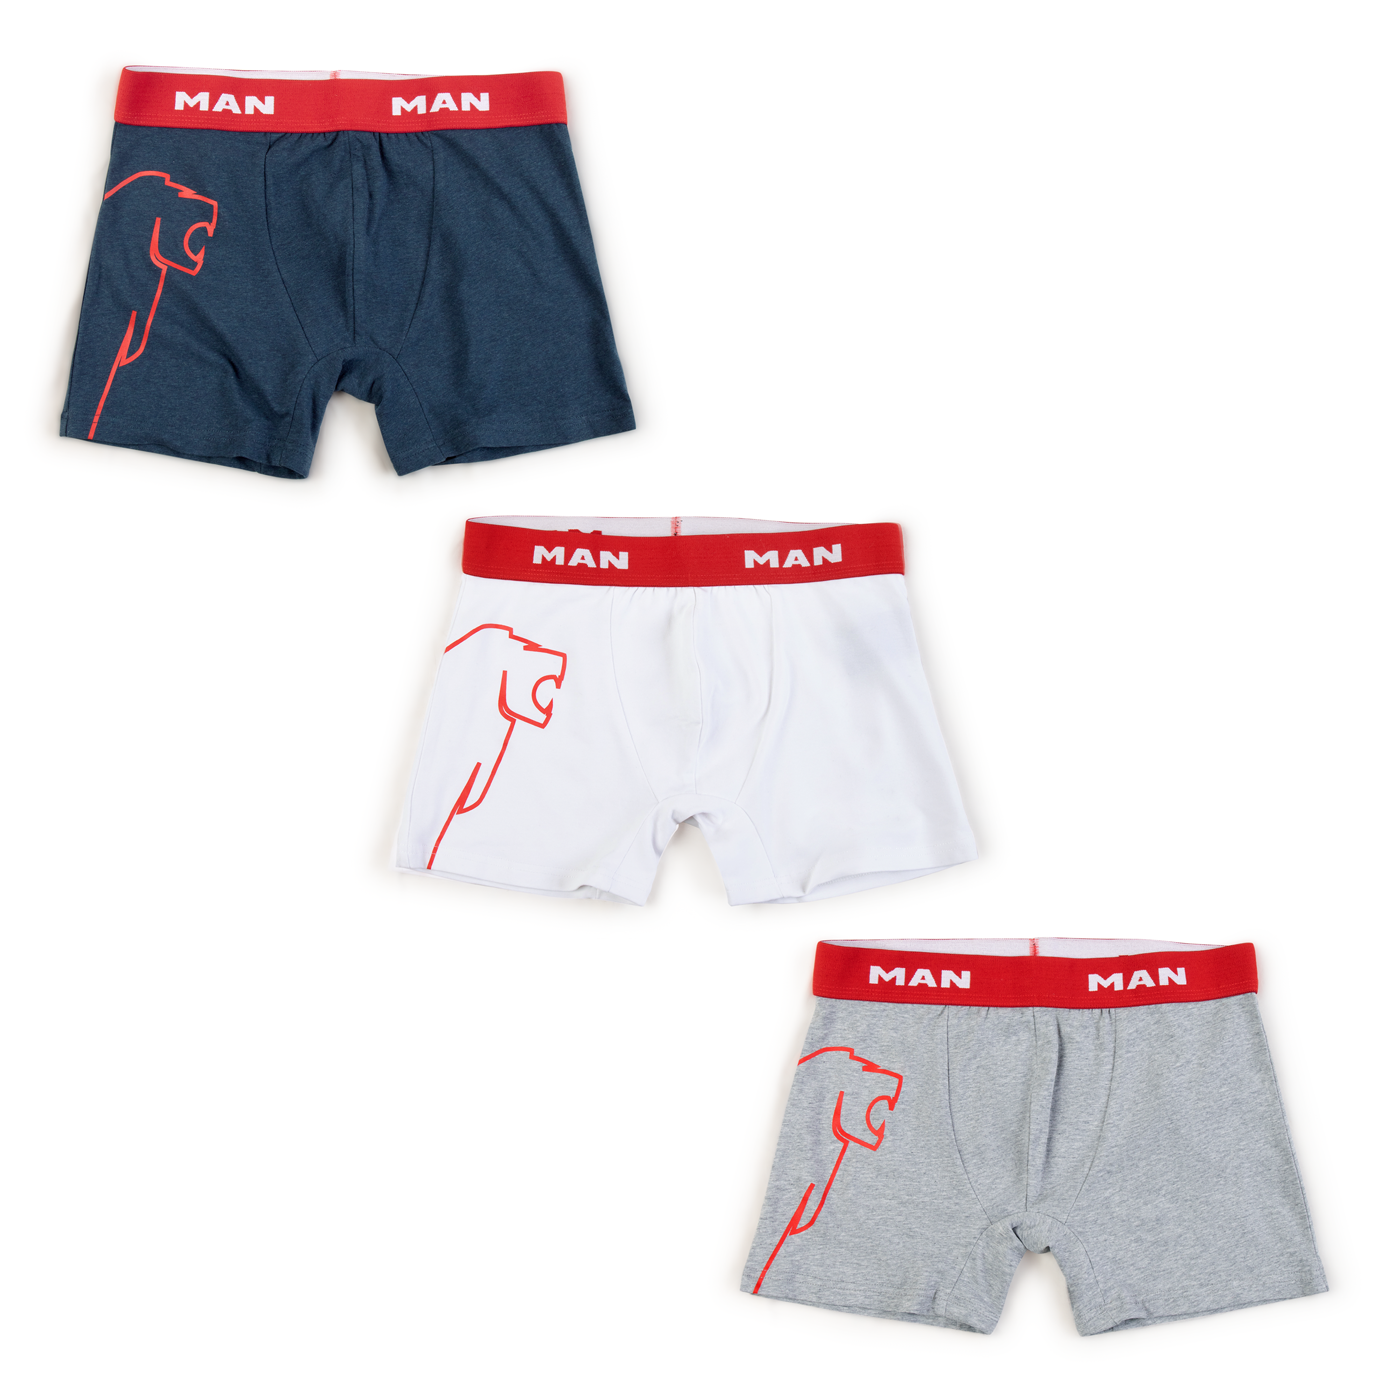 MAN Lion Collection Men's 3-pack boxer shorts